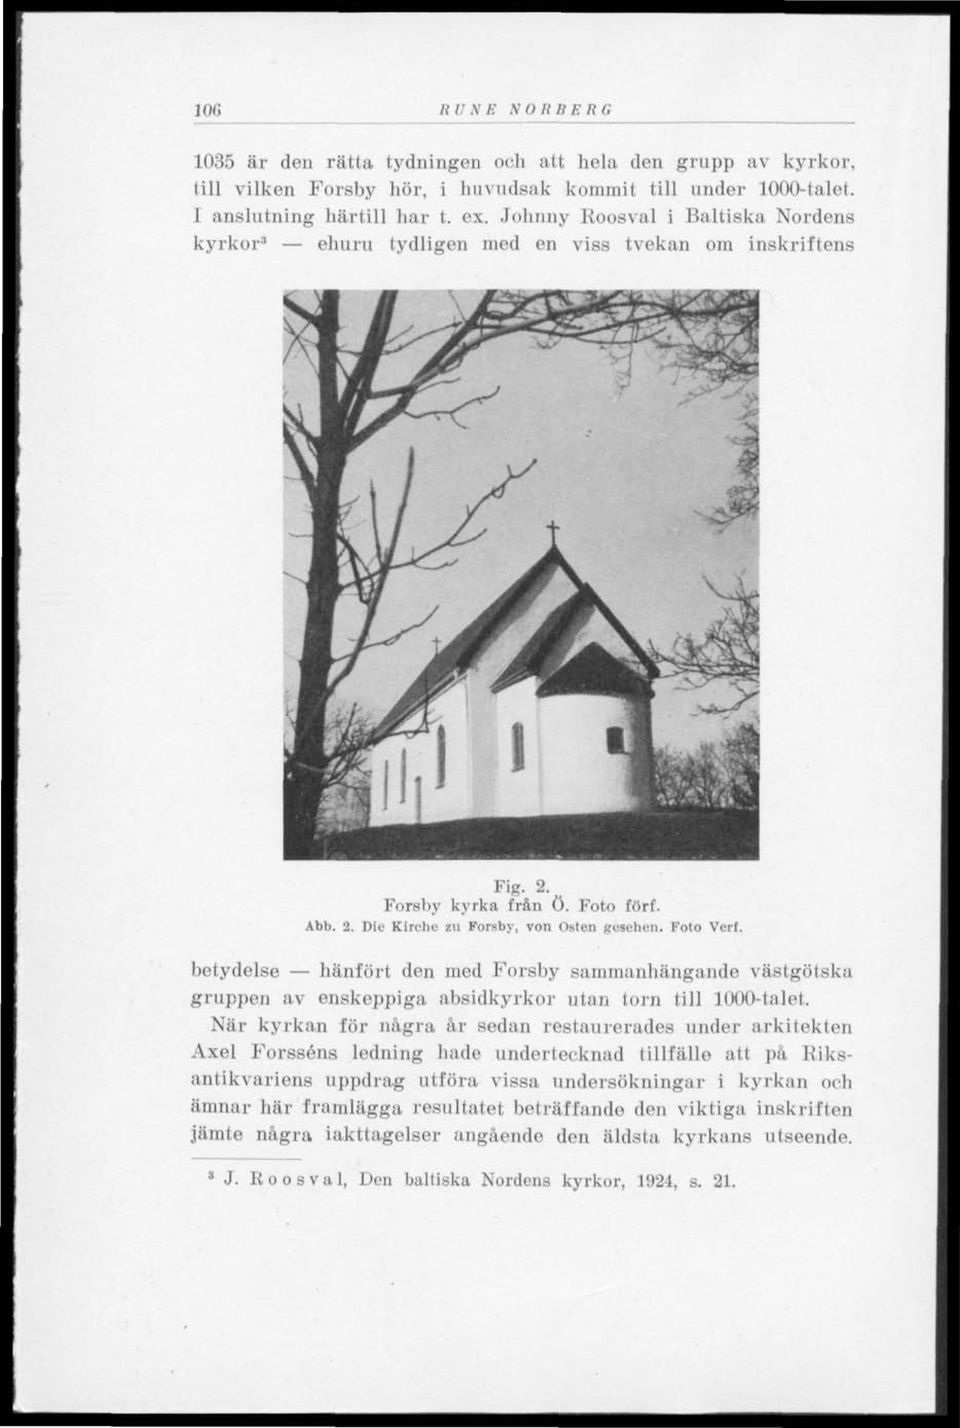 betydelse hänfört den med Forsby sammanhängande västgötska gruppen av enskeppiga absidkyrkor utan torn till 1000-talet.